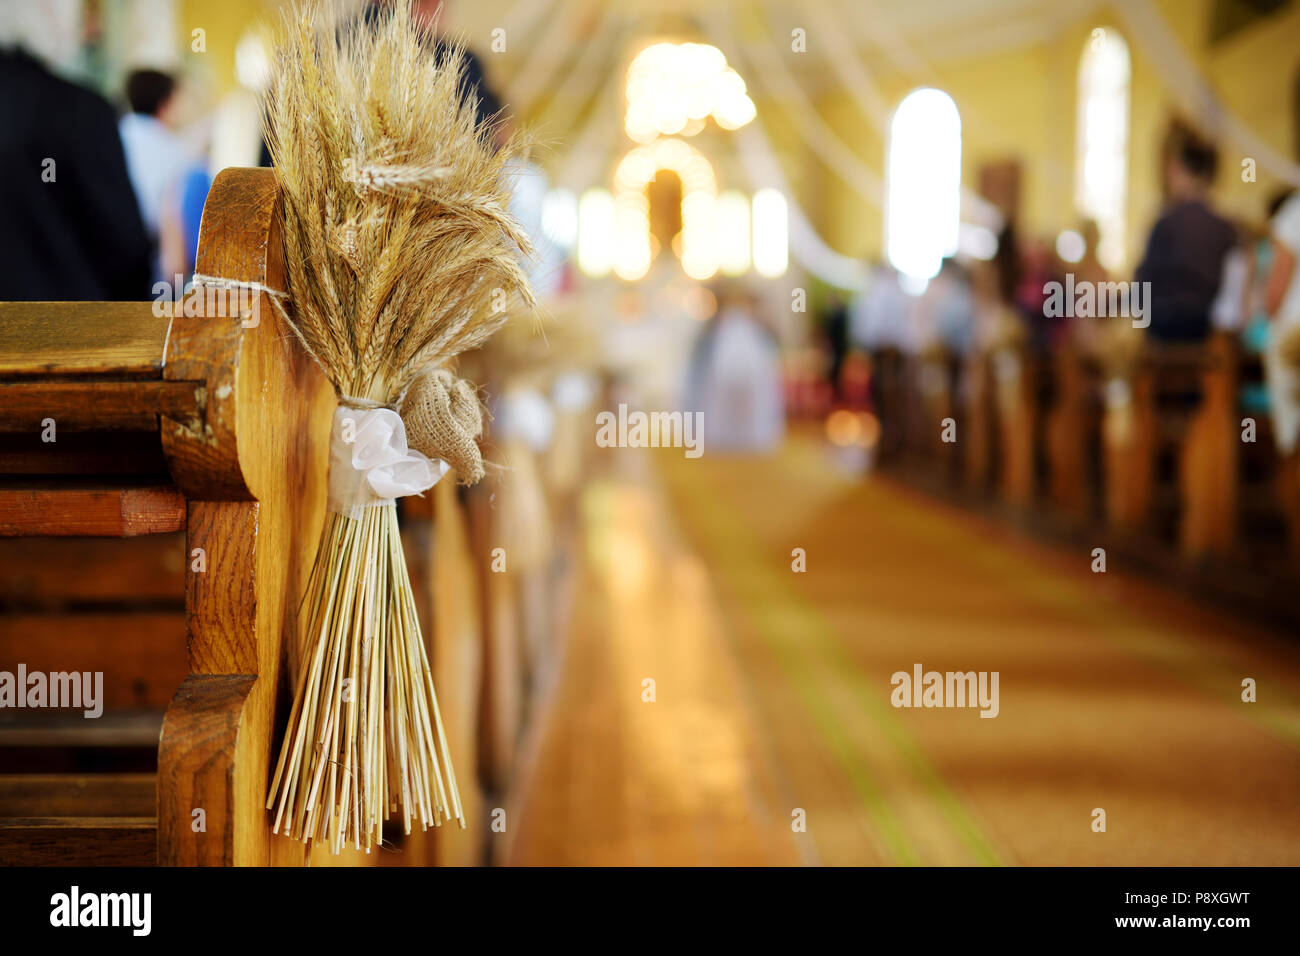 Schöne Roggen Hochzeit Dekoration in einer Kirche während katholische  Hochzeit Zeremonie Stockfotografie - Alamy